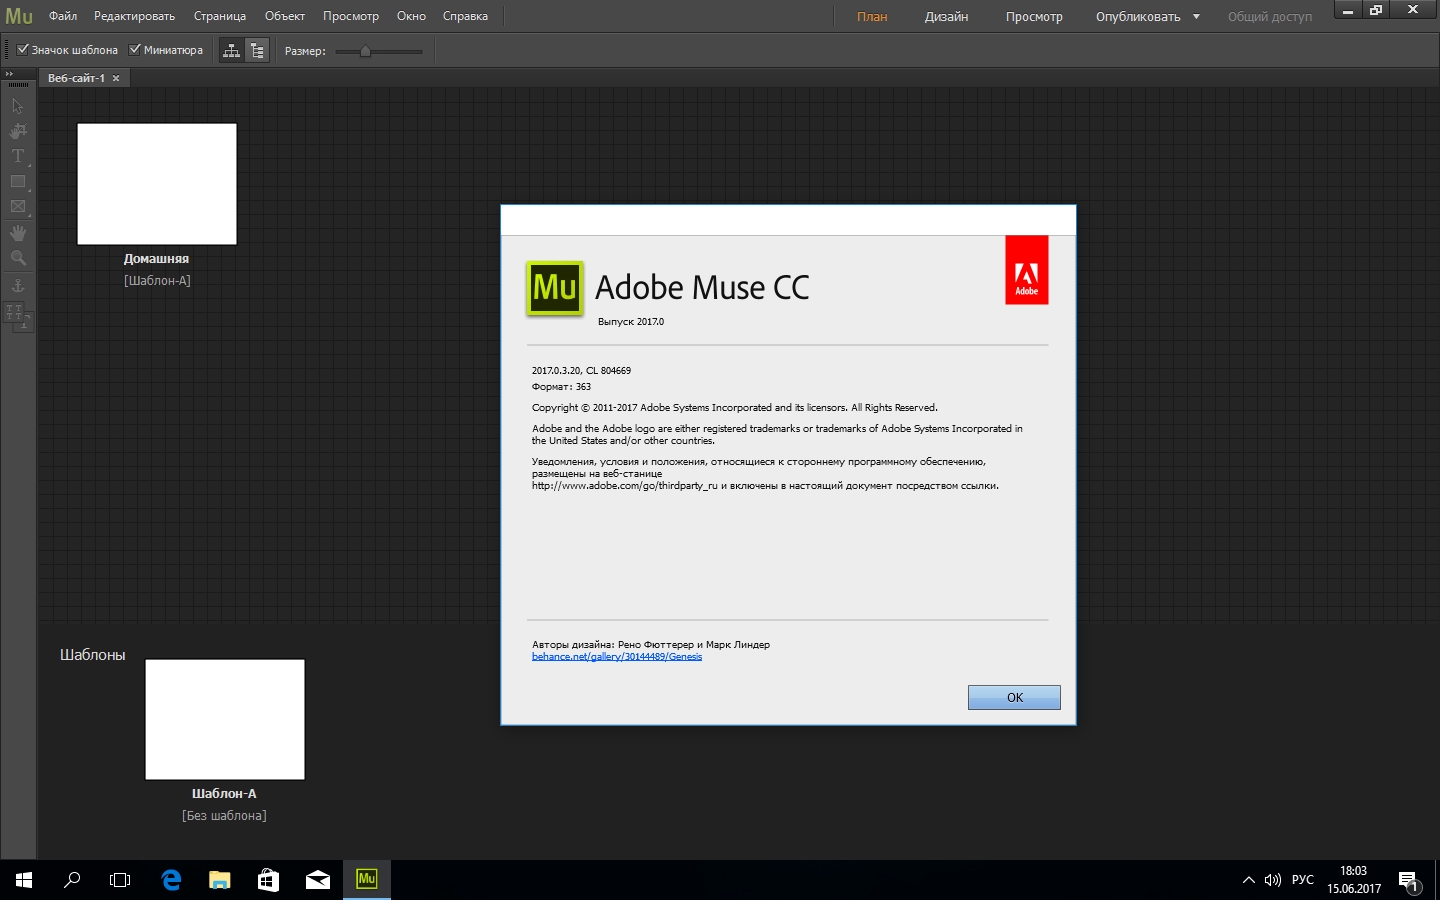 Формат сайта Adobe Muse. Adobe Muse. Сайт adobe com